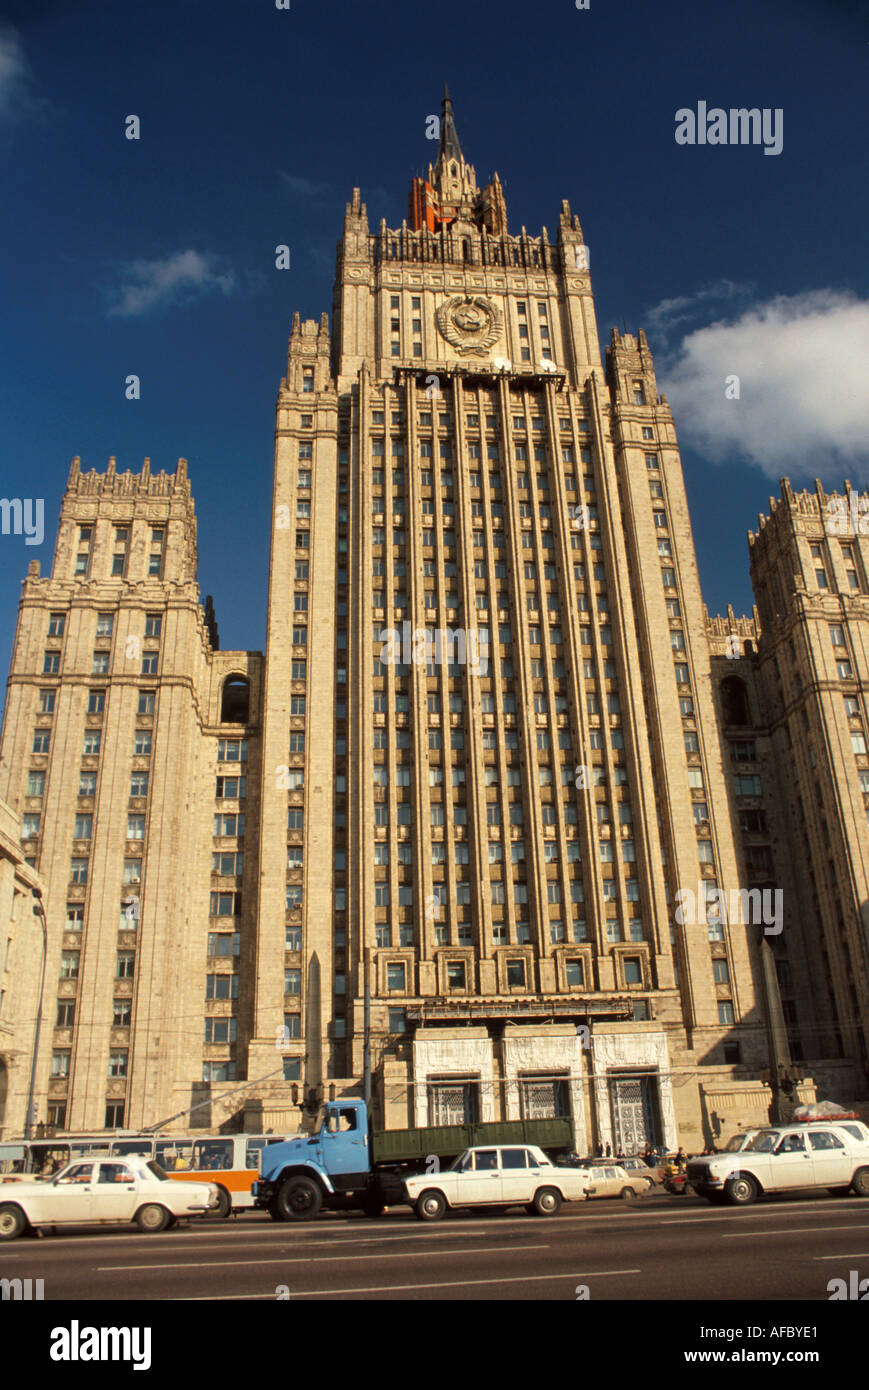 Mosca Russia,Europa dell'Est europeo,Federazione Russa,edificio del Ministero degli Esteri,stile stalinista,comunismo,Rus019 Foto Stock